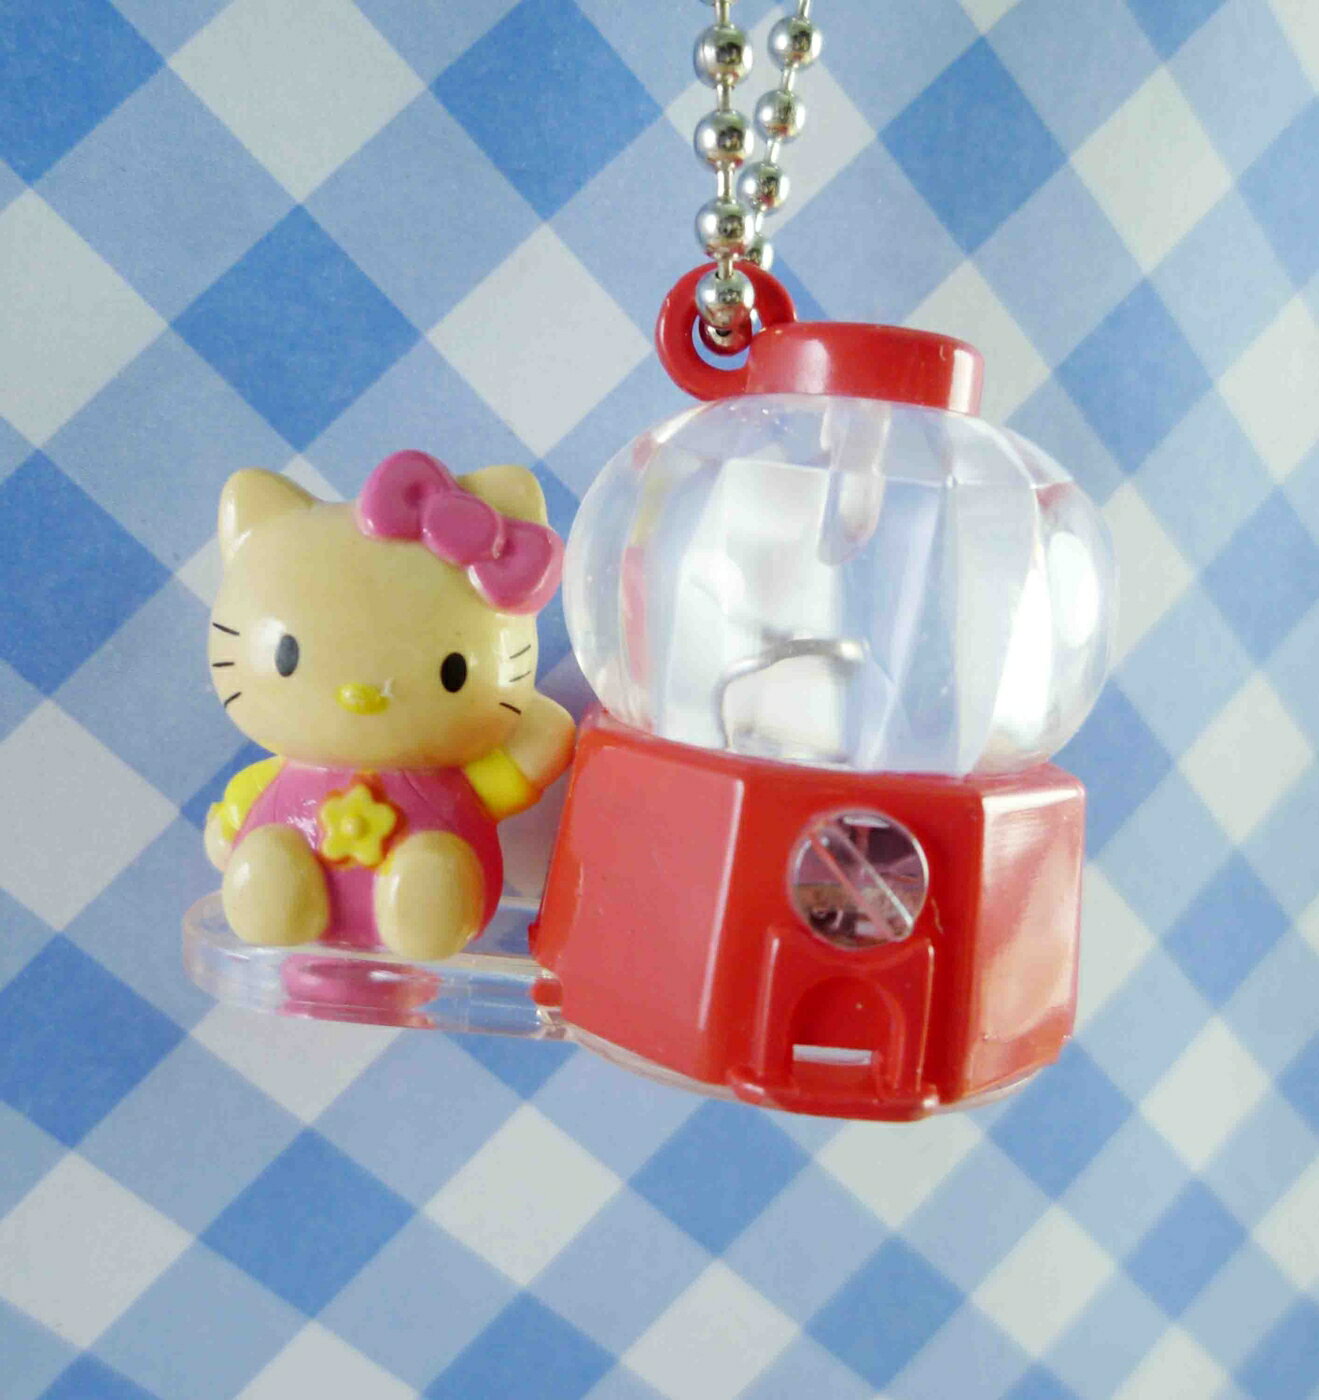 【震撼精品百貨】Hello Kitty 凱蒂貓 KITTY鑰匙圈-紅機器 震撼日式精品百貨